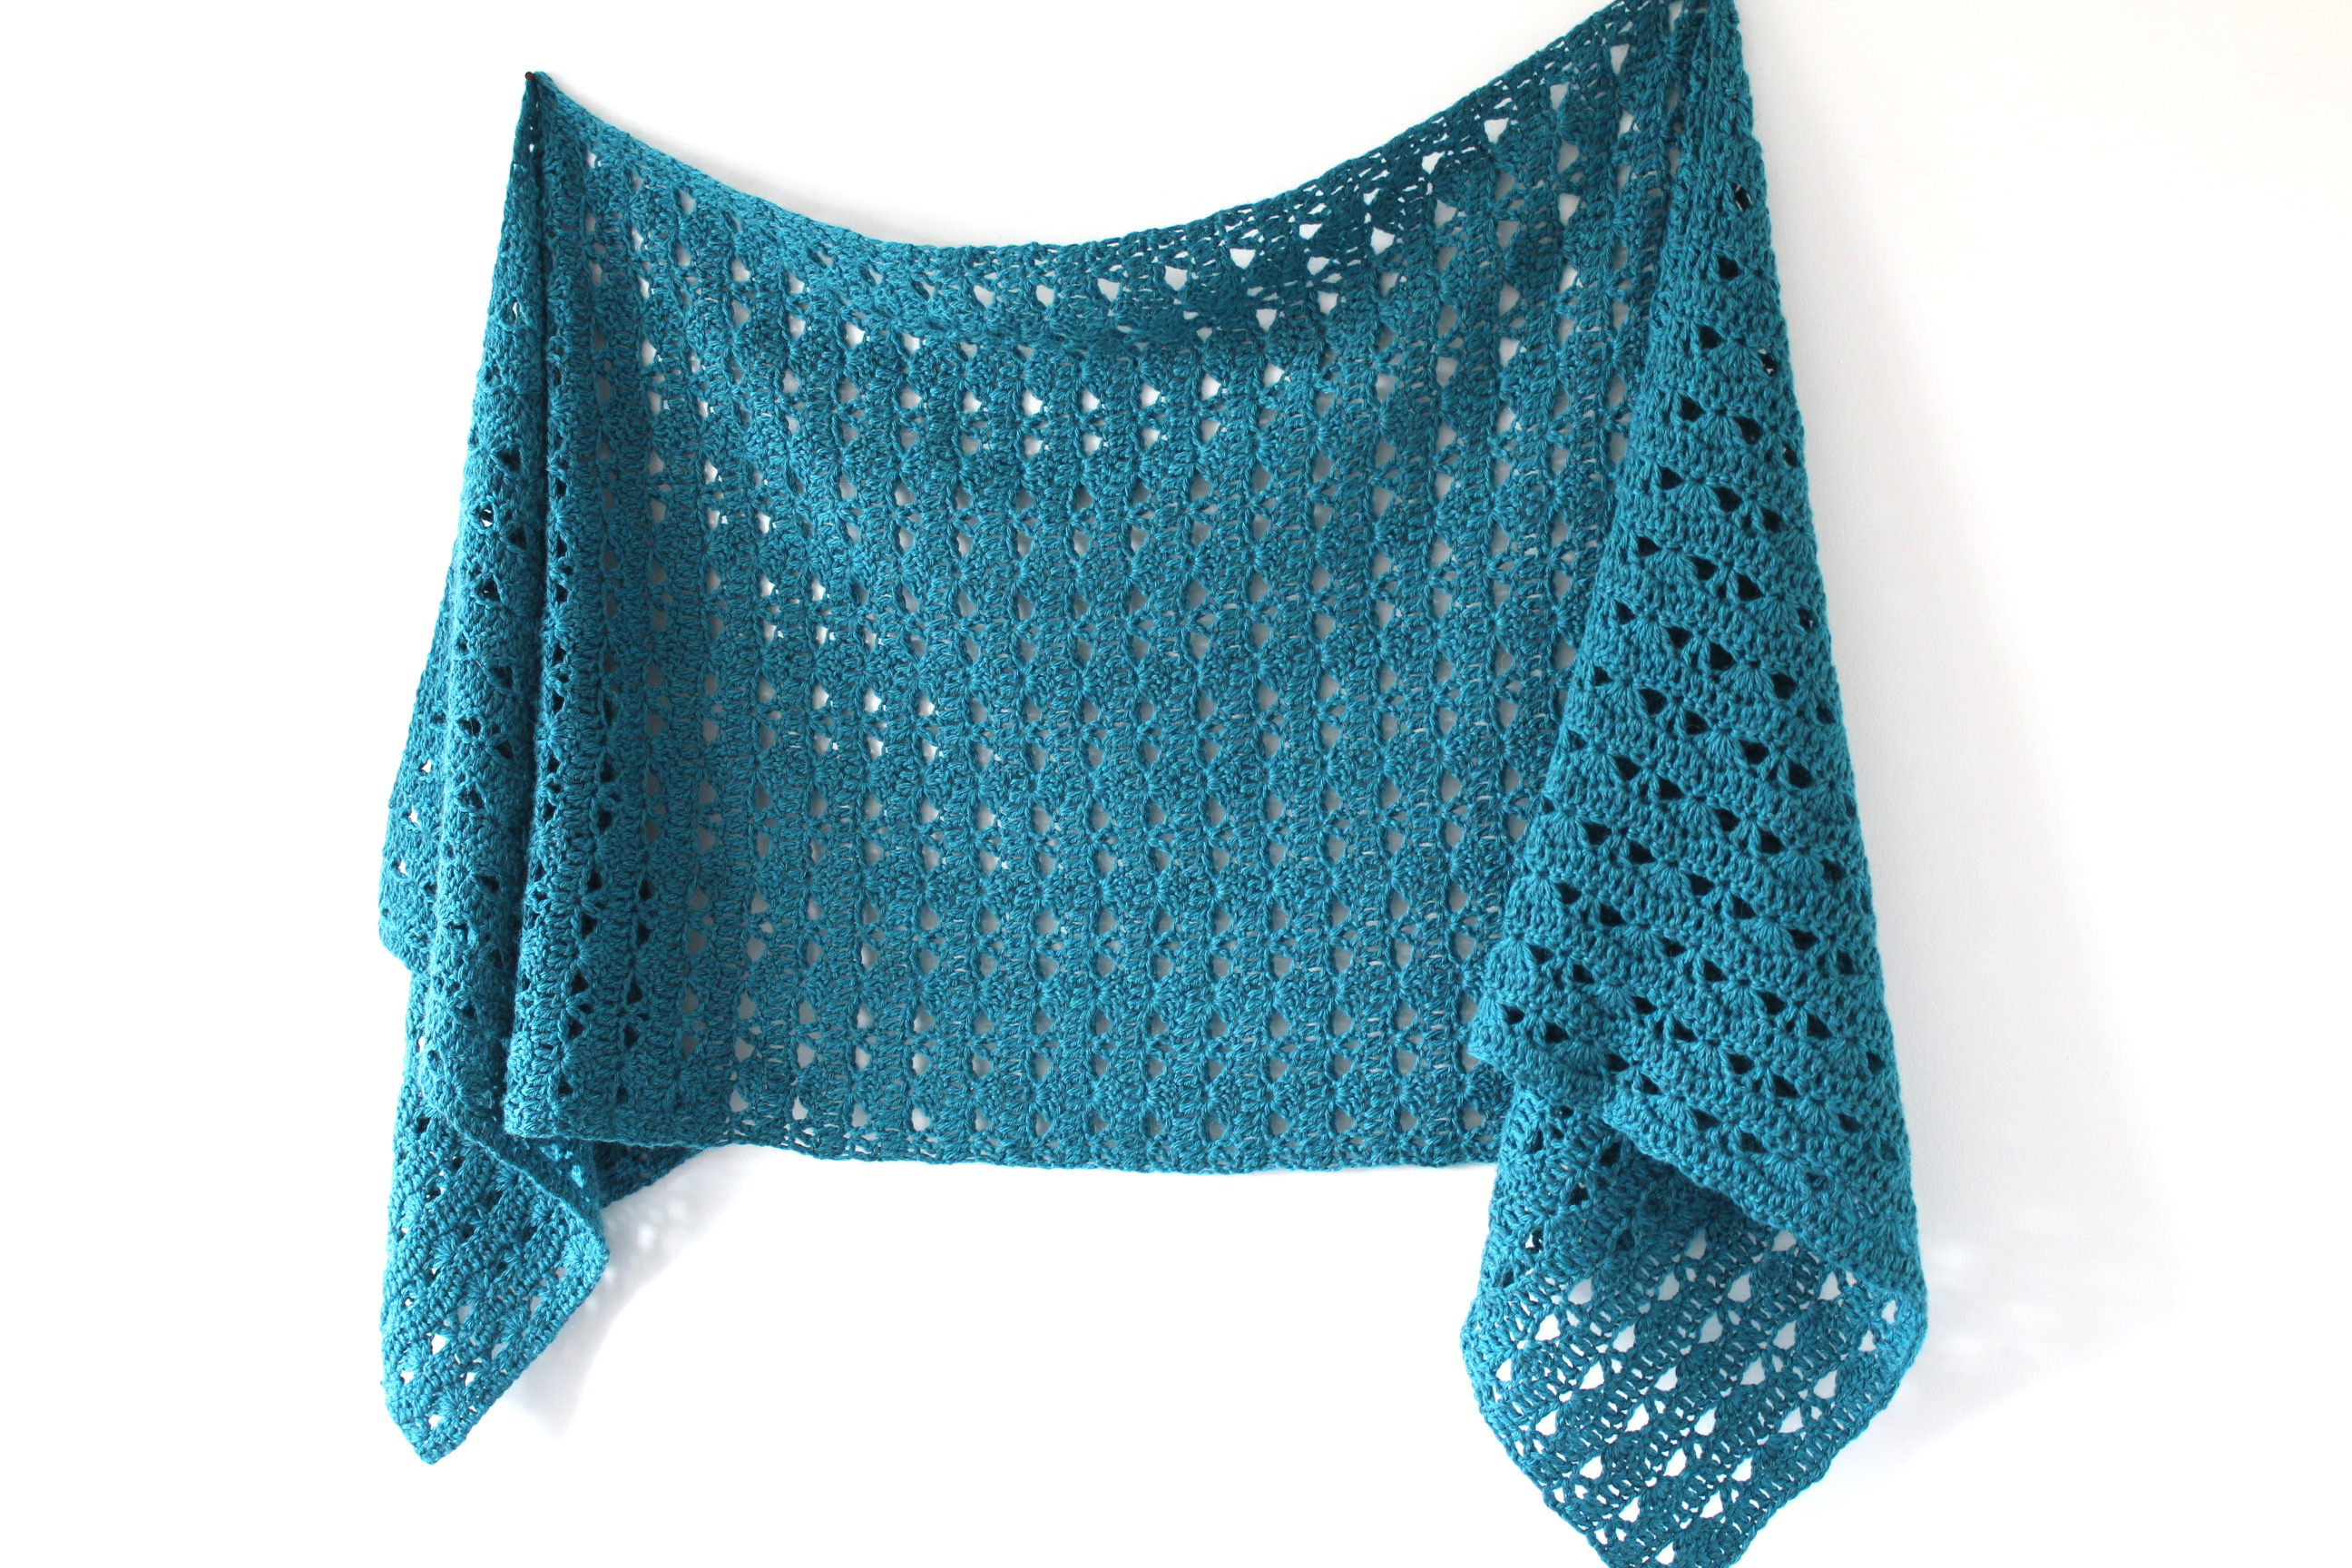 Quinley Sideways Shawl - Free Crochet pattern